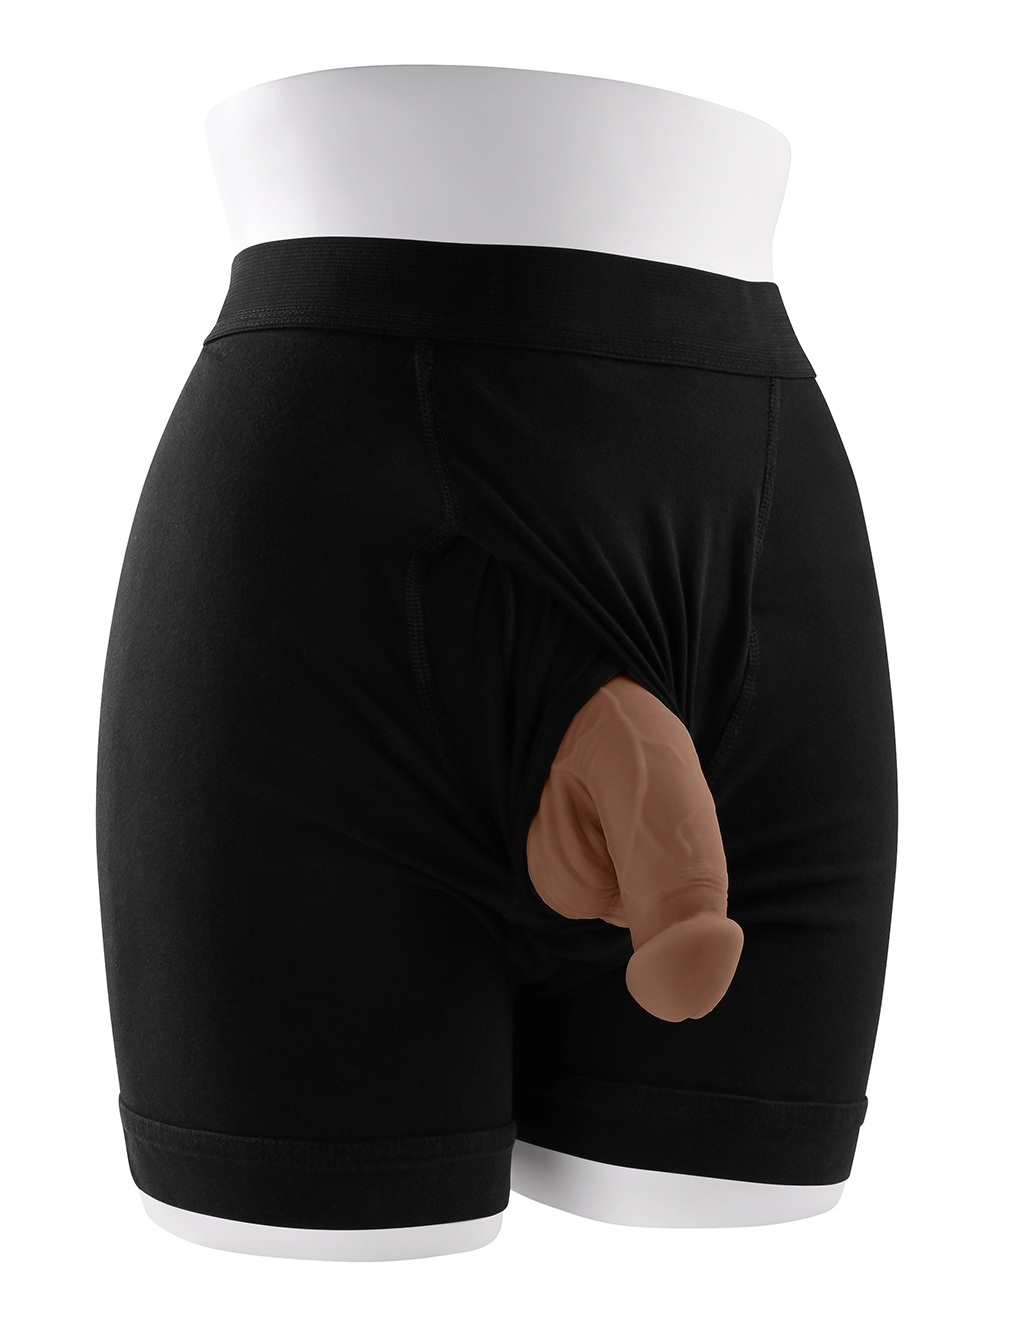 Gender X 4" Packer - Chocolate - Underwear Display